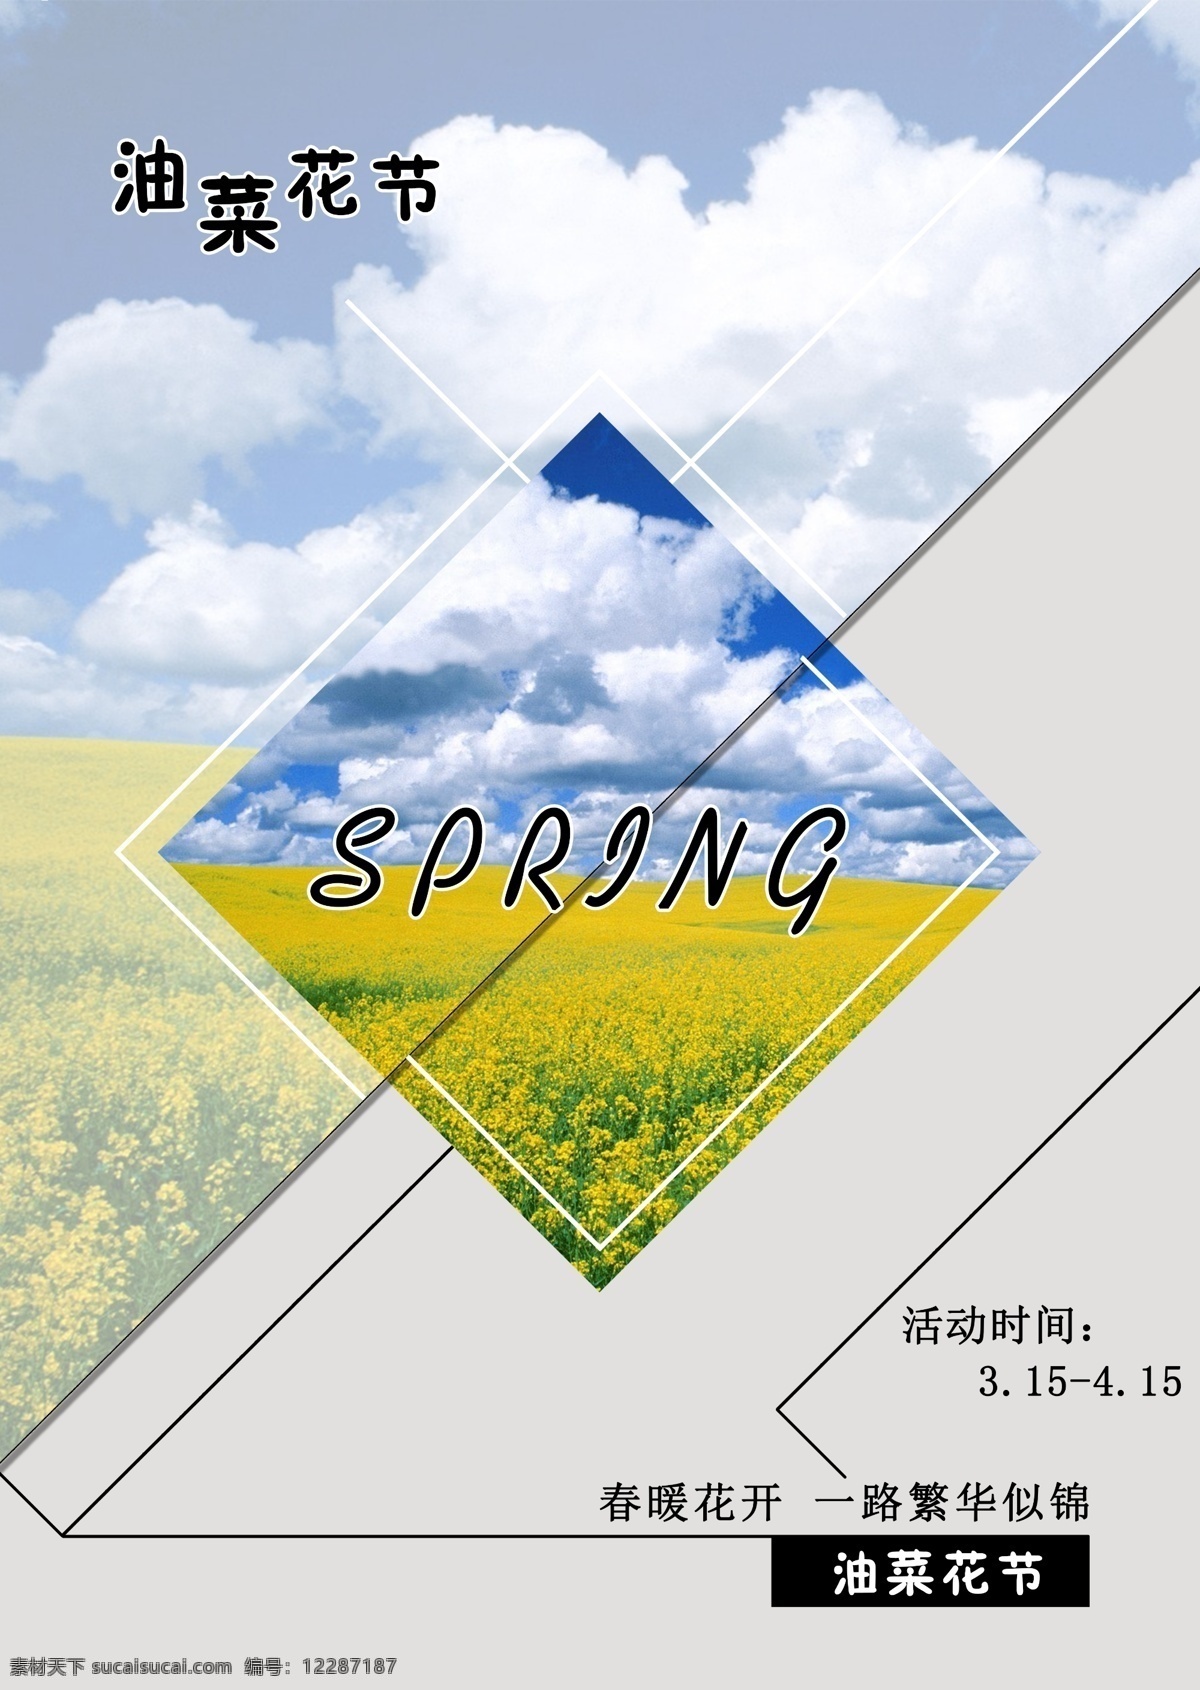 春季 油菜花 节 宣传海报 宣传 春暖花开